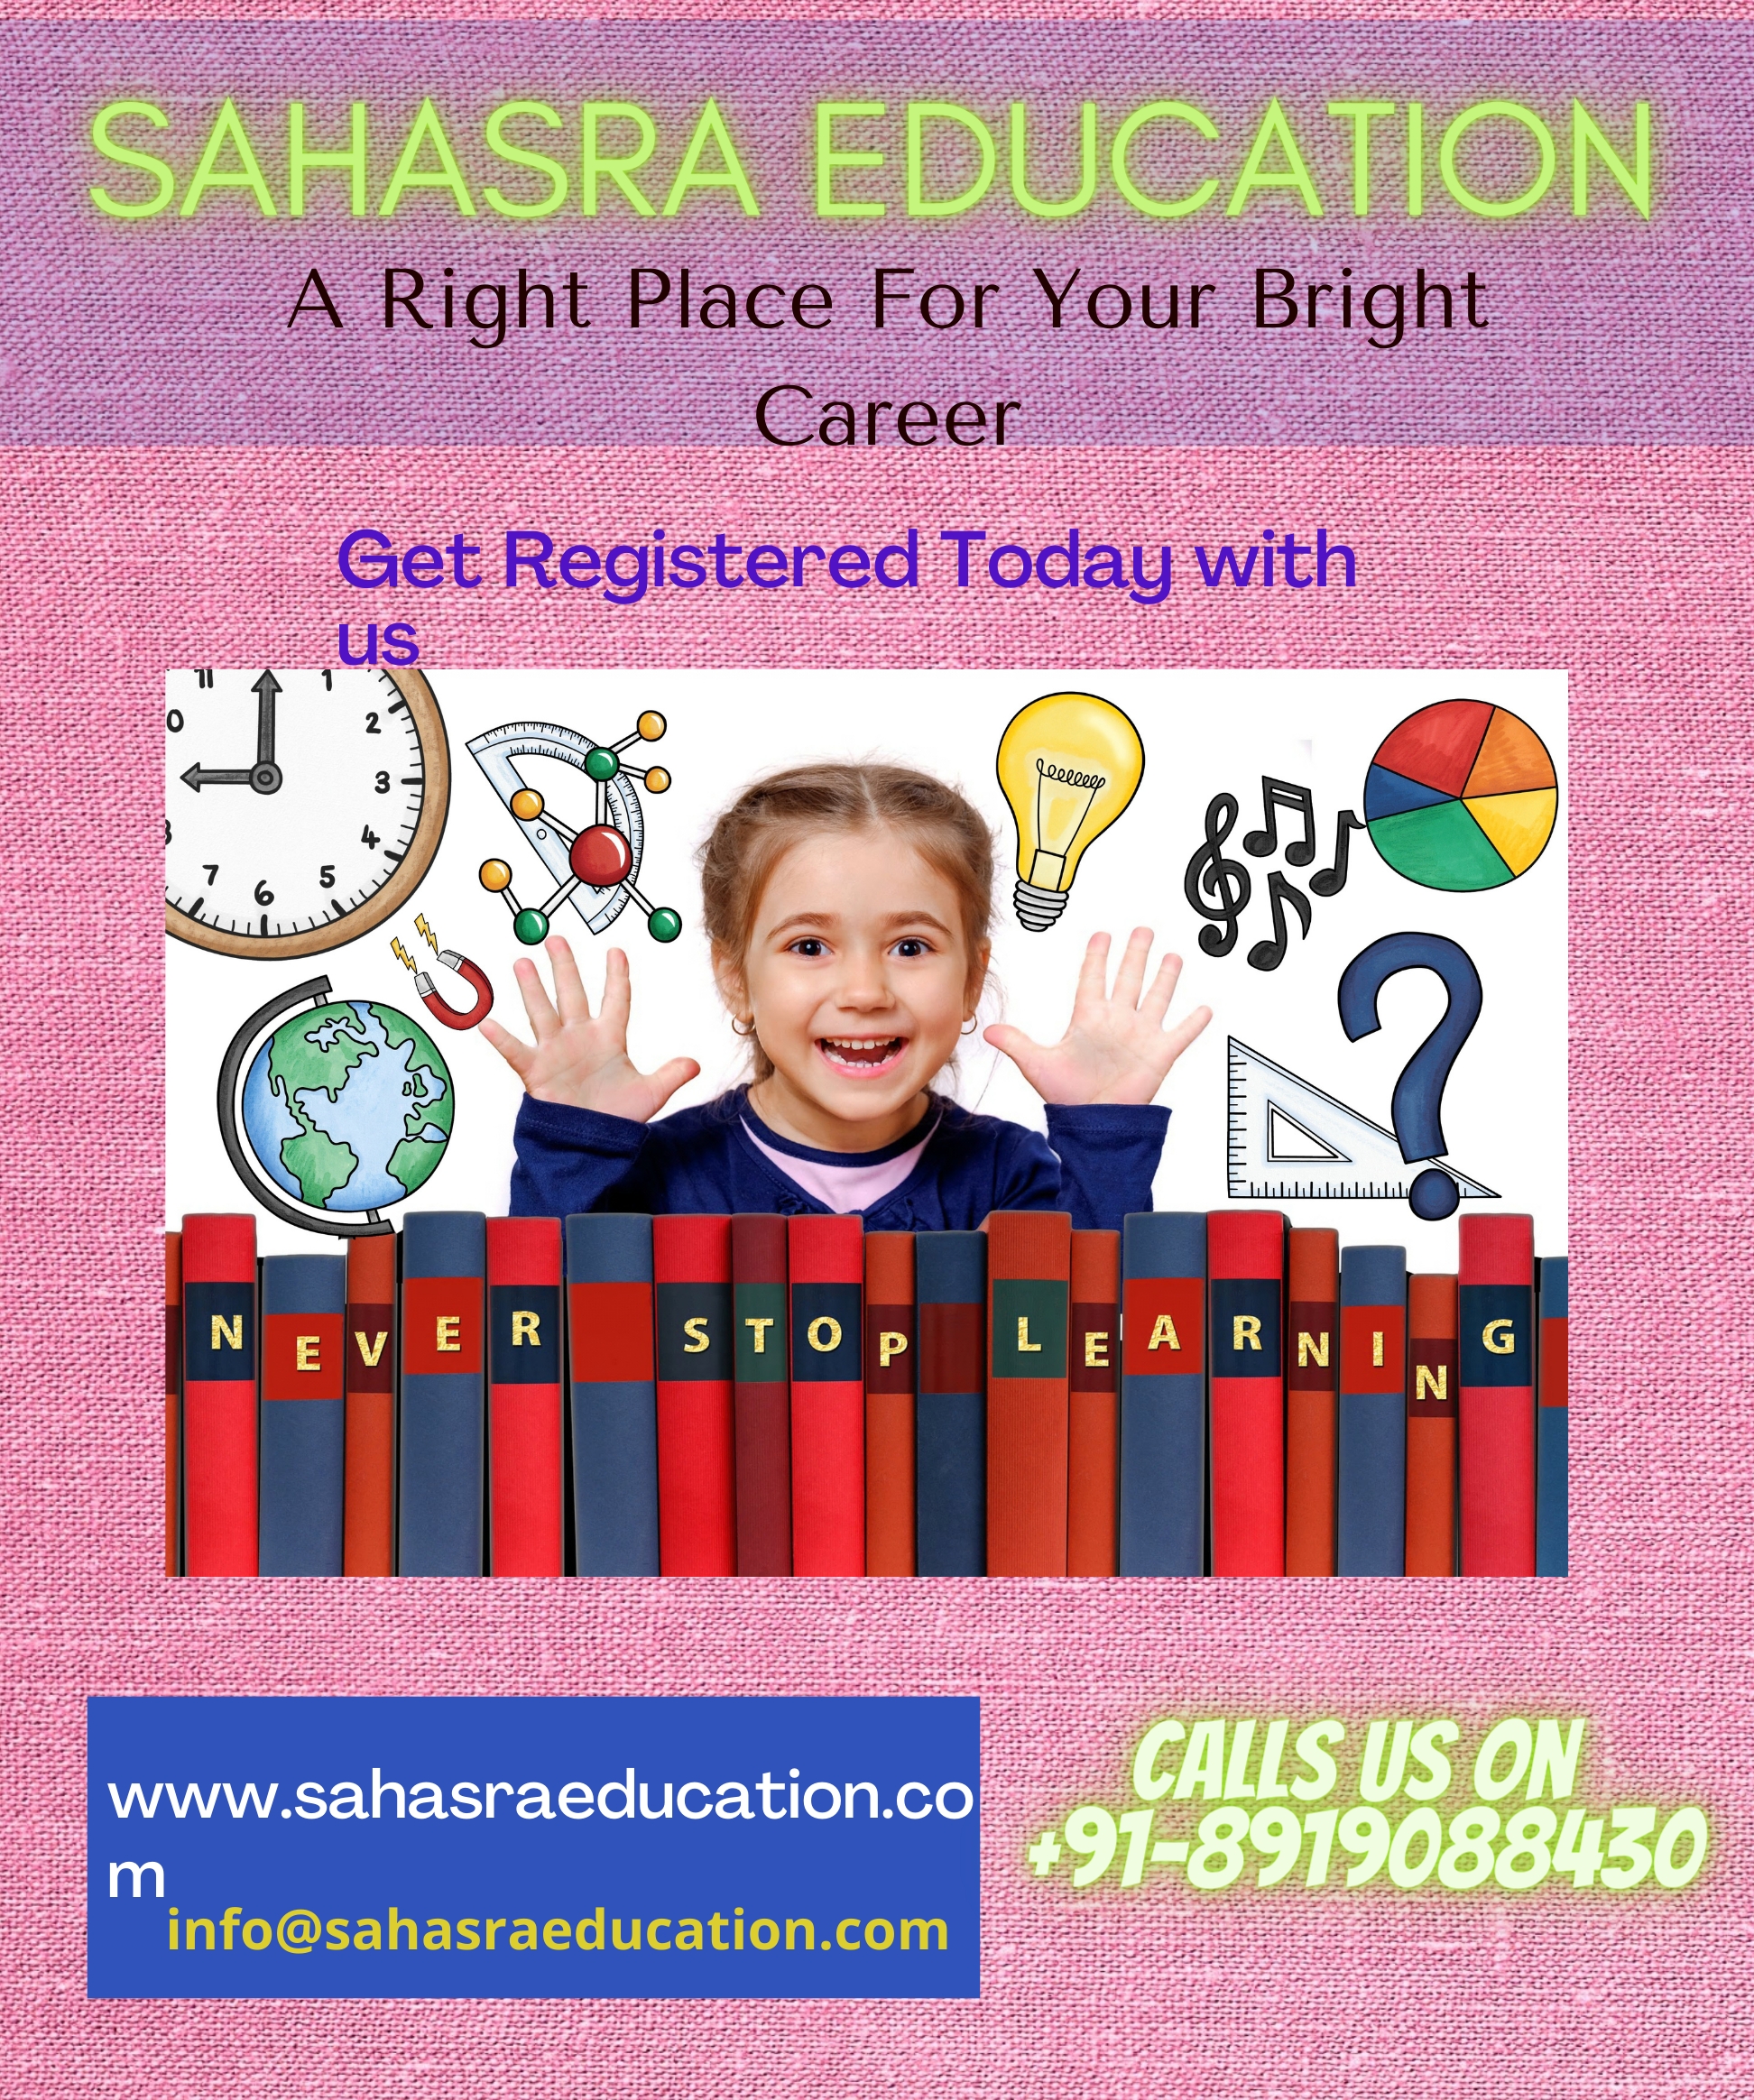 Join Sahasra Education as a Tutor